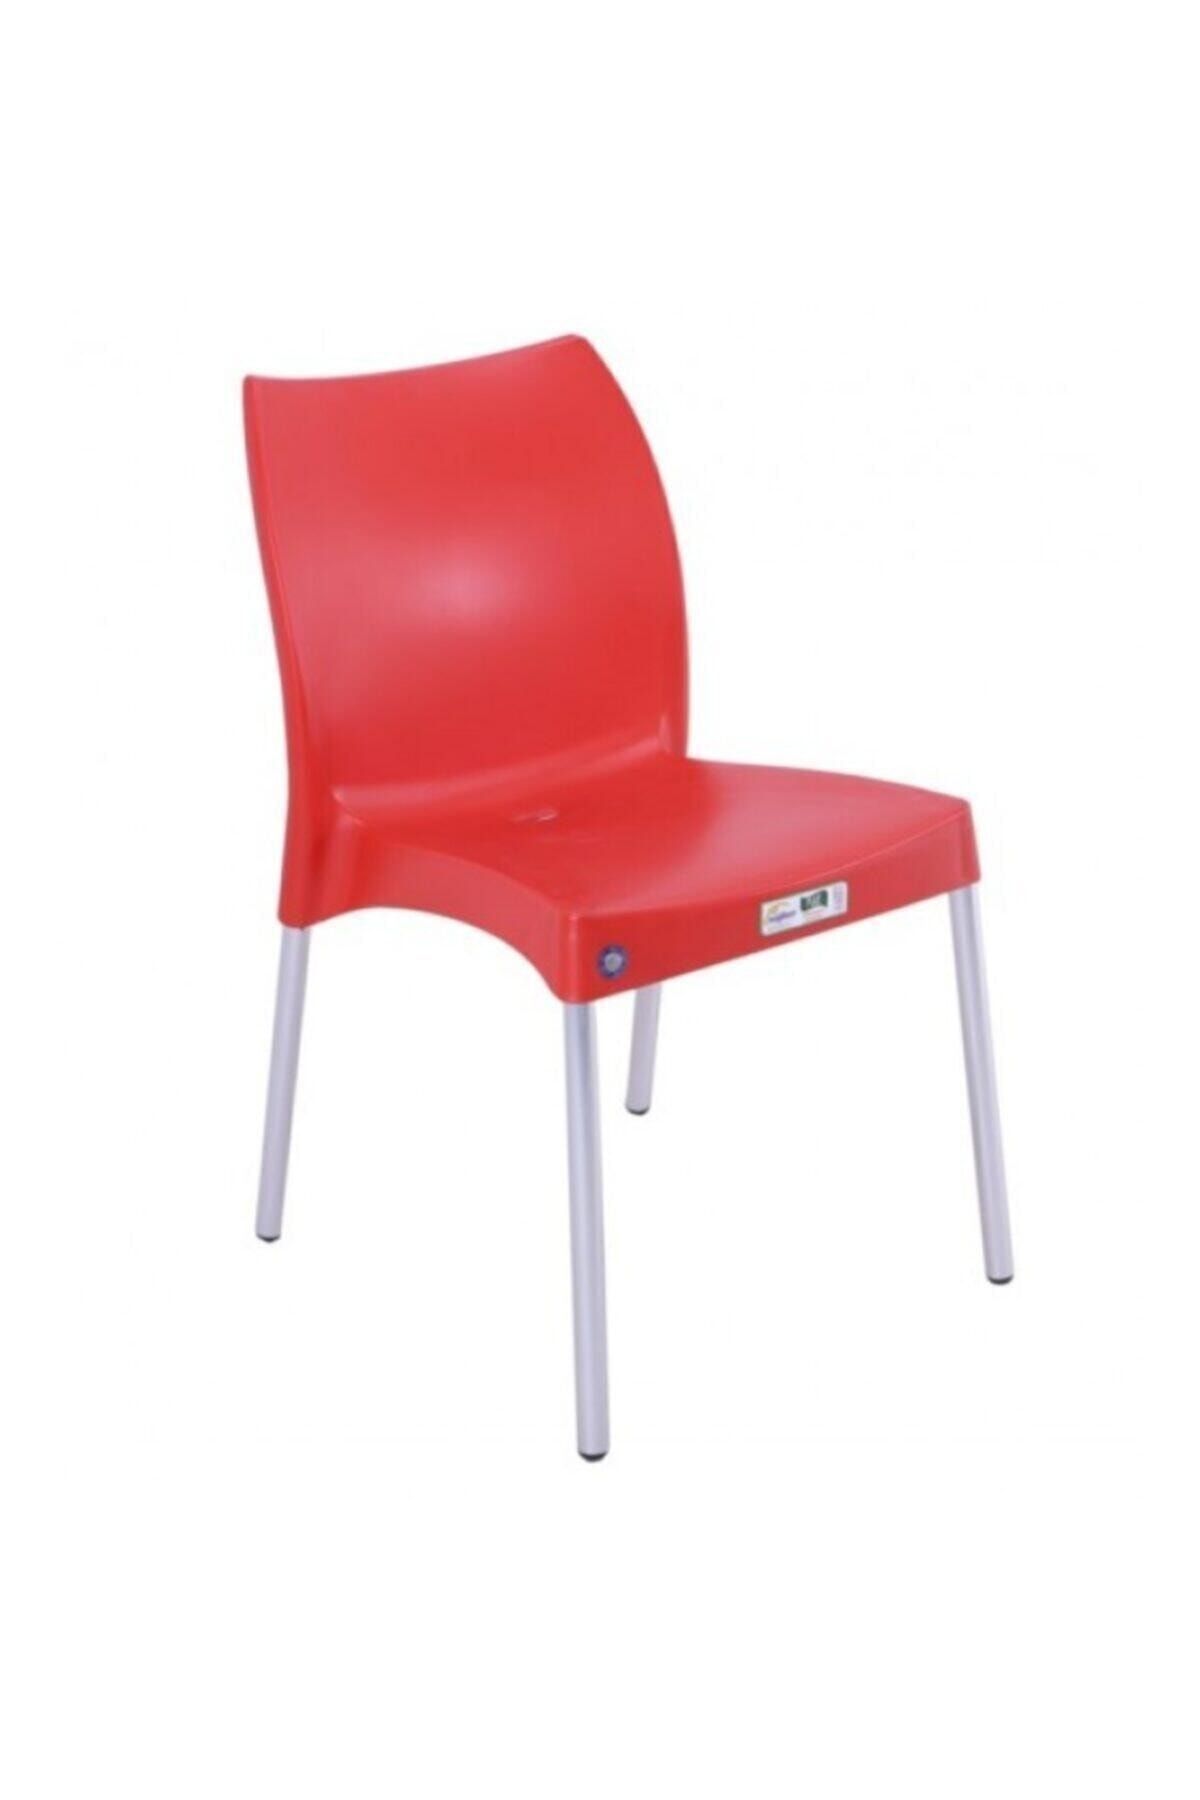 Mandella Nil Sandalye (2 ADET) Alüminyum Ayaklı Kırmızı